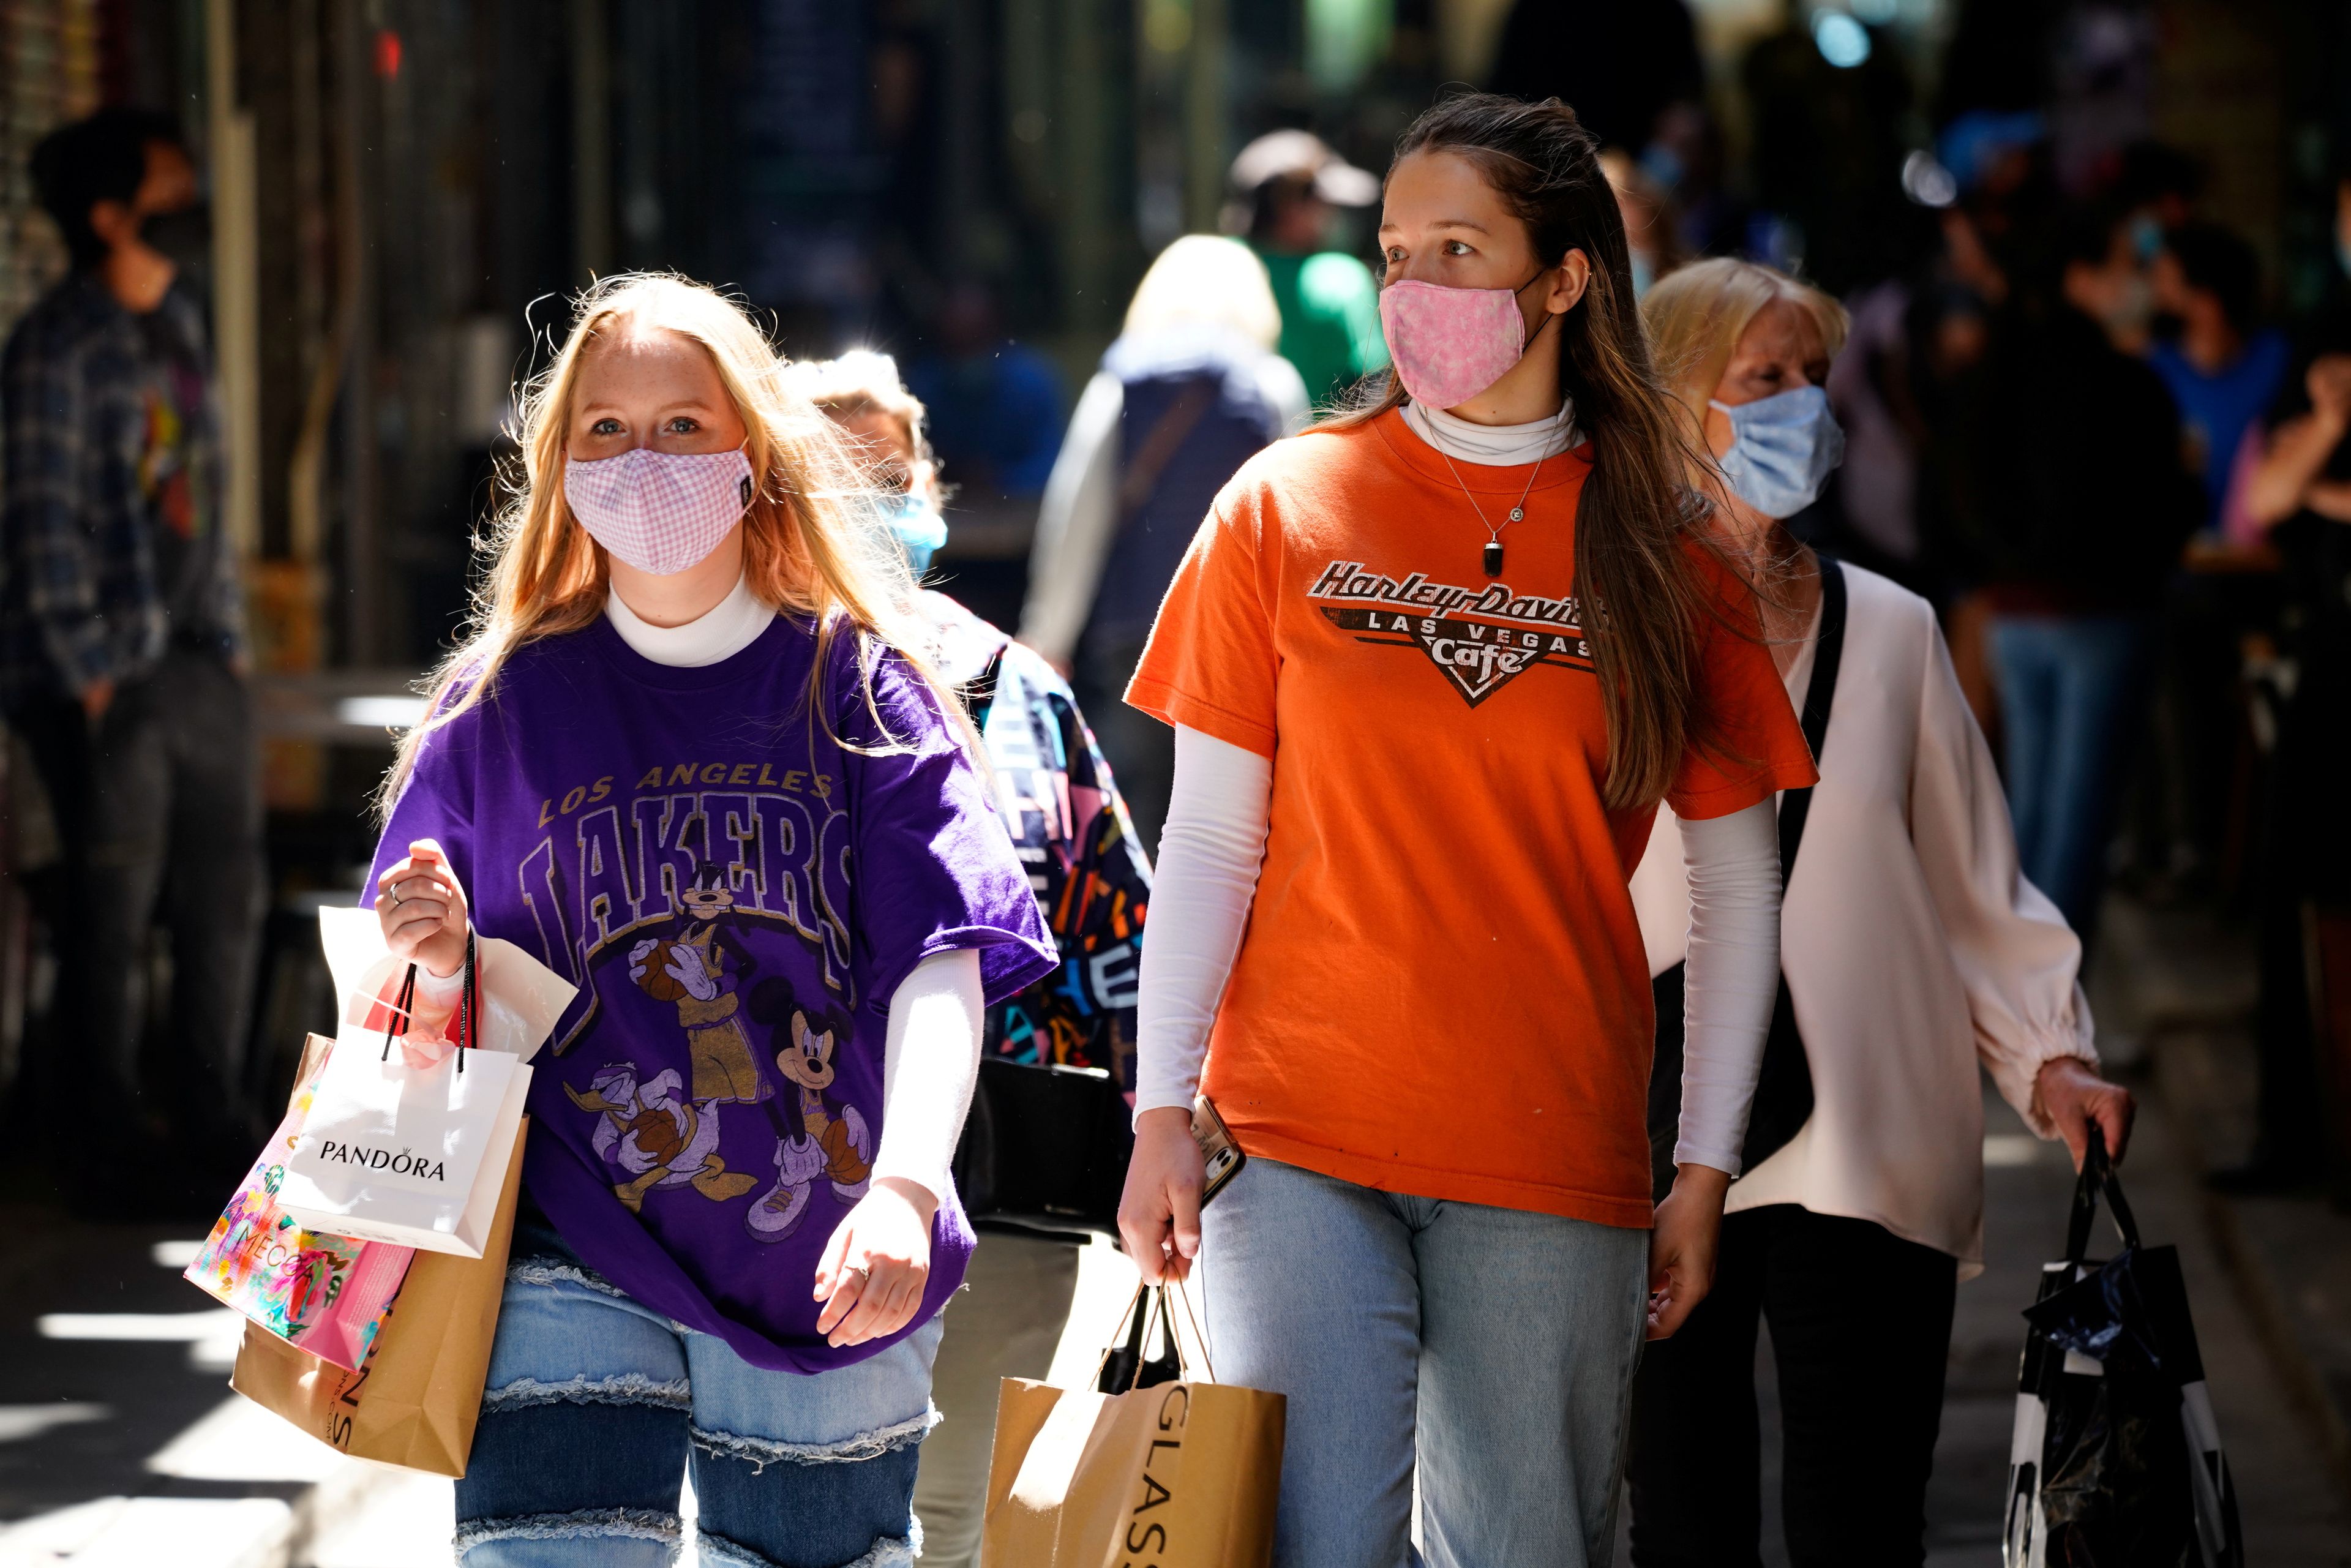 Mujeres de compras durante la pandemia del coronavirus